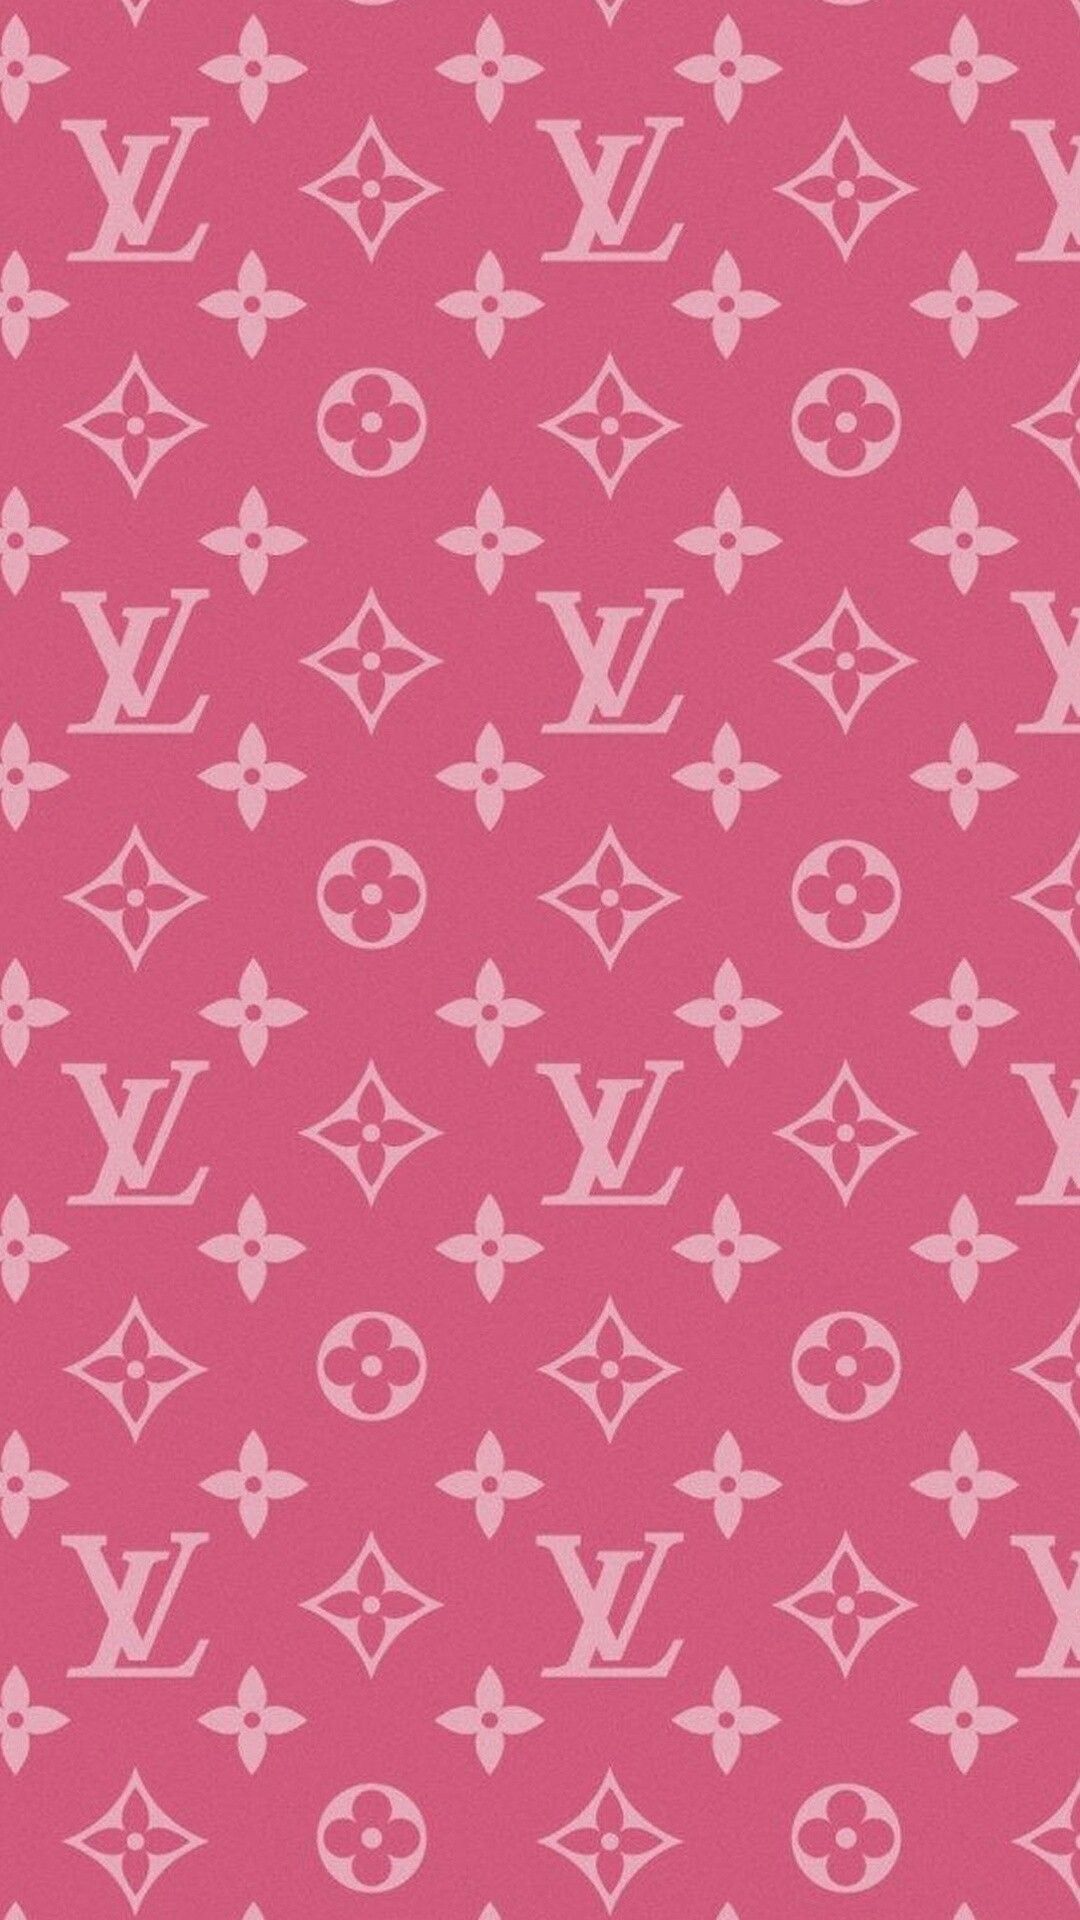 Louis Vuitton big Logo Background byM BG - rose pink white  Chanel  wallpapers, Iphone lockscreen wallpaper, Logo background